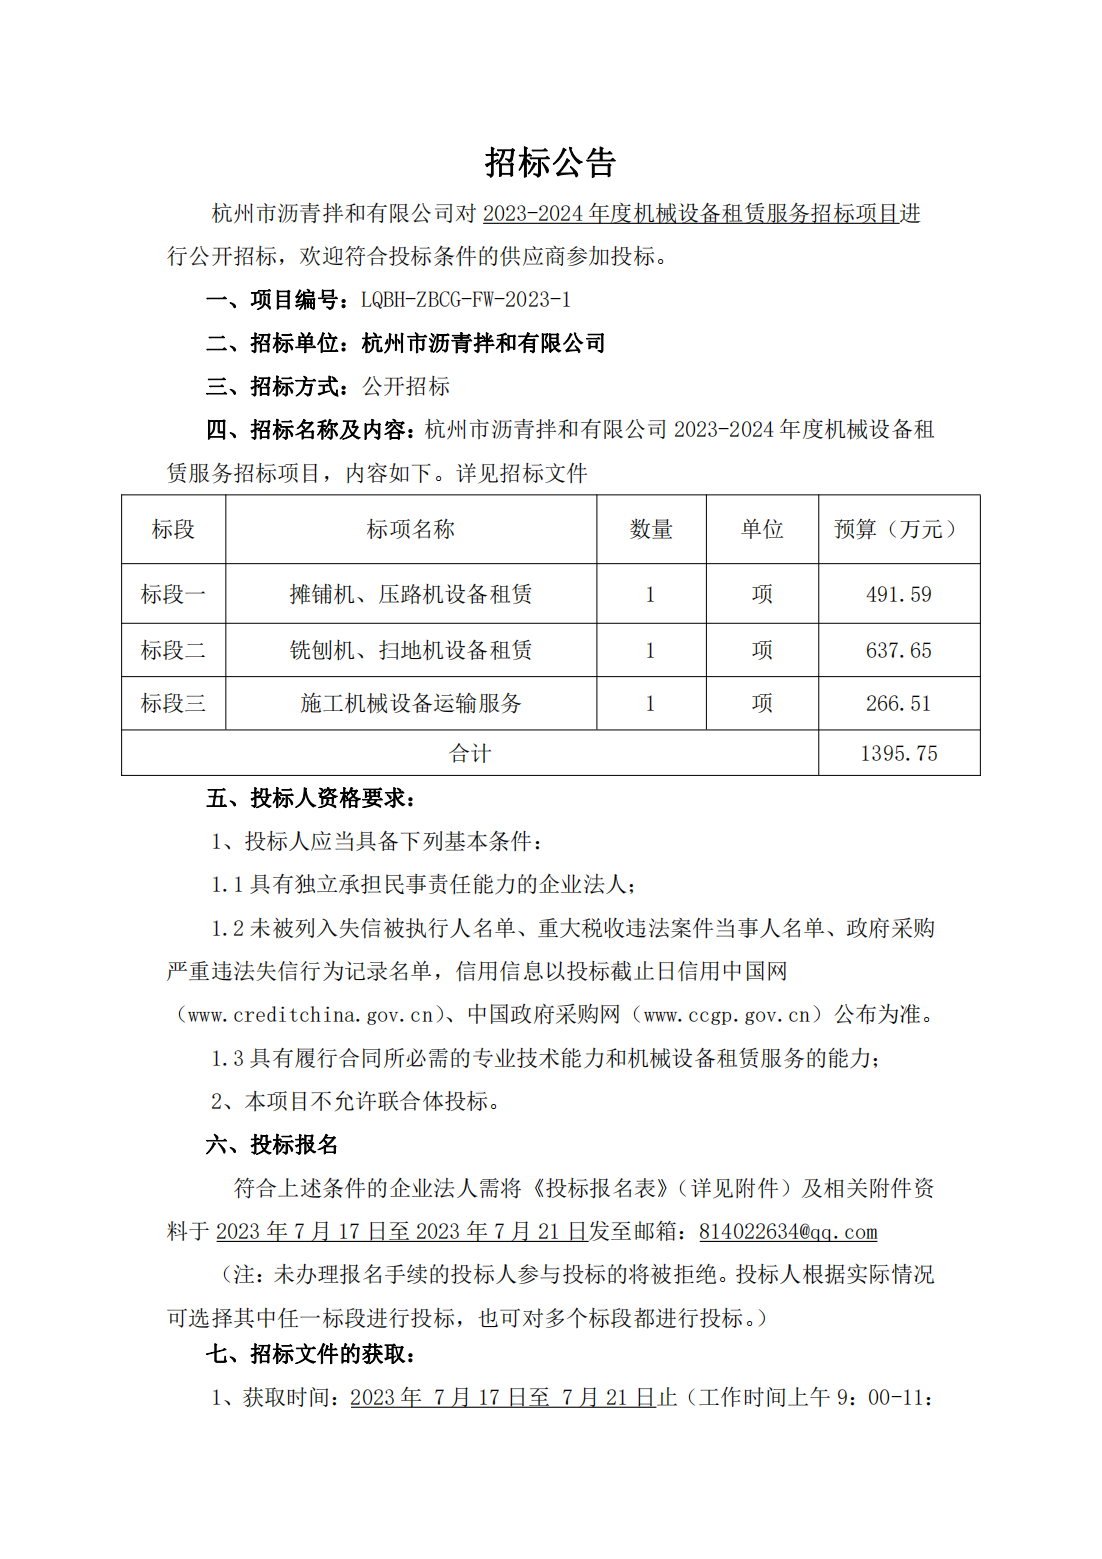 招标公告-杭州市沥青拌和有限公司2023-2024年度机械设备租赁服务招标项目_00.png